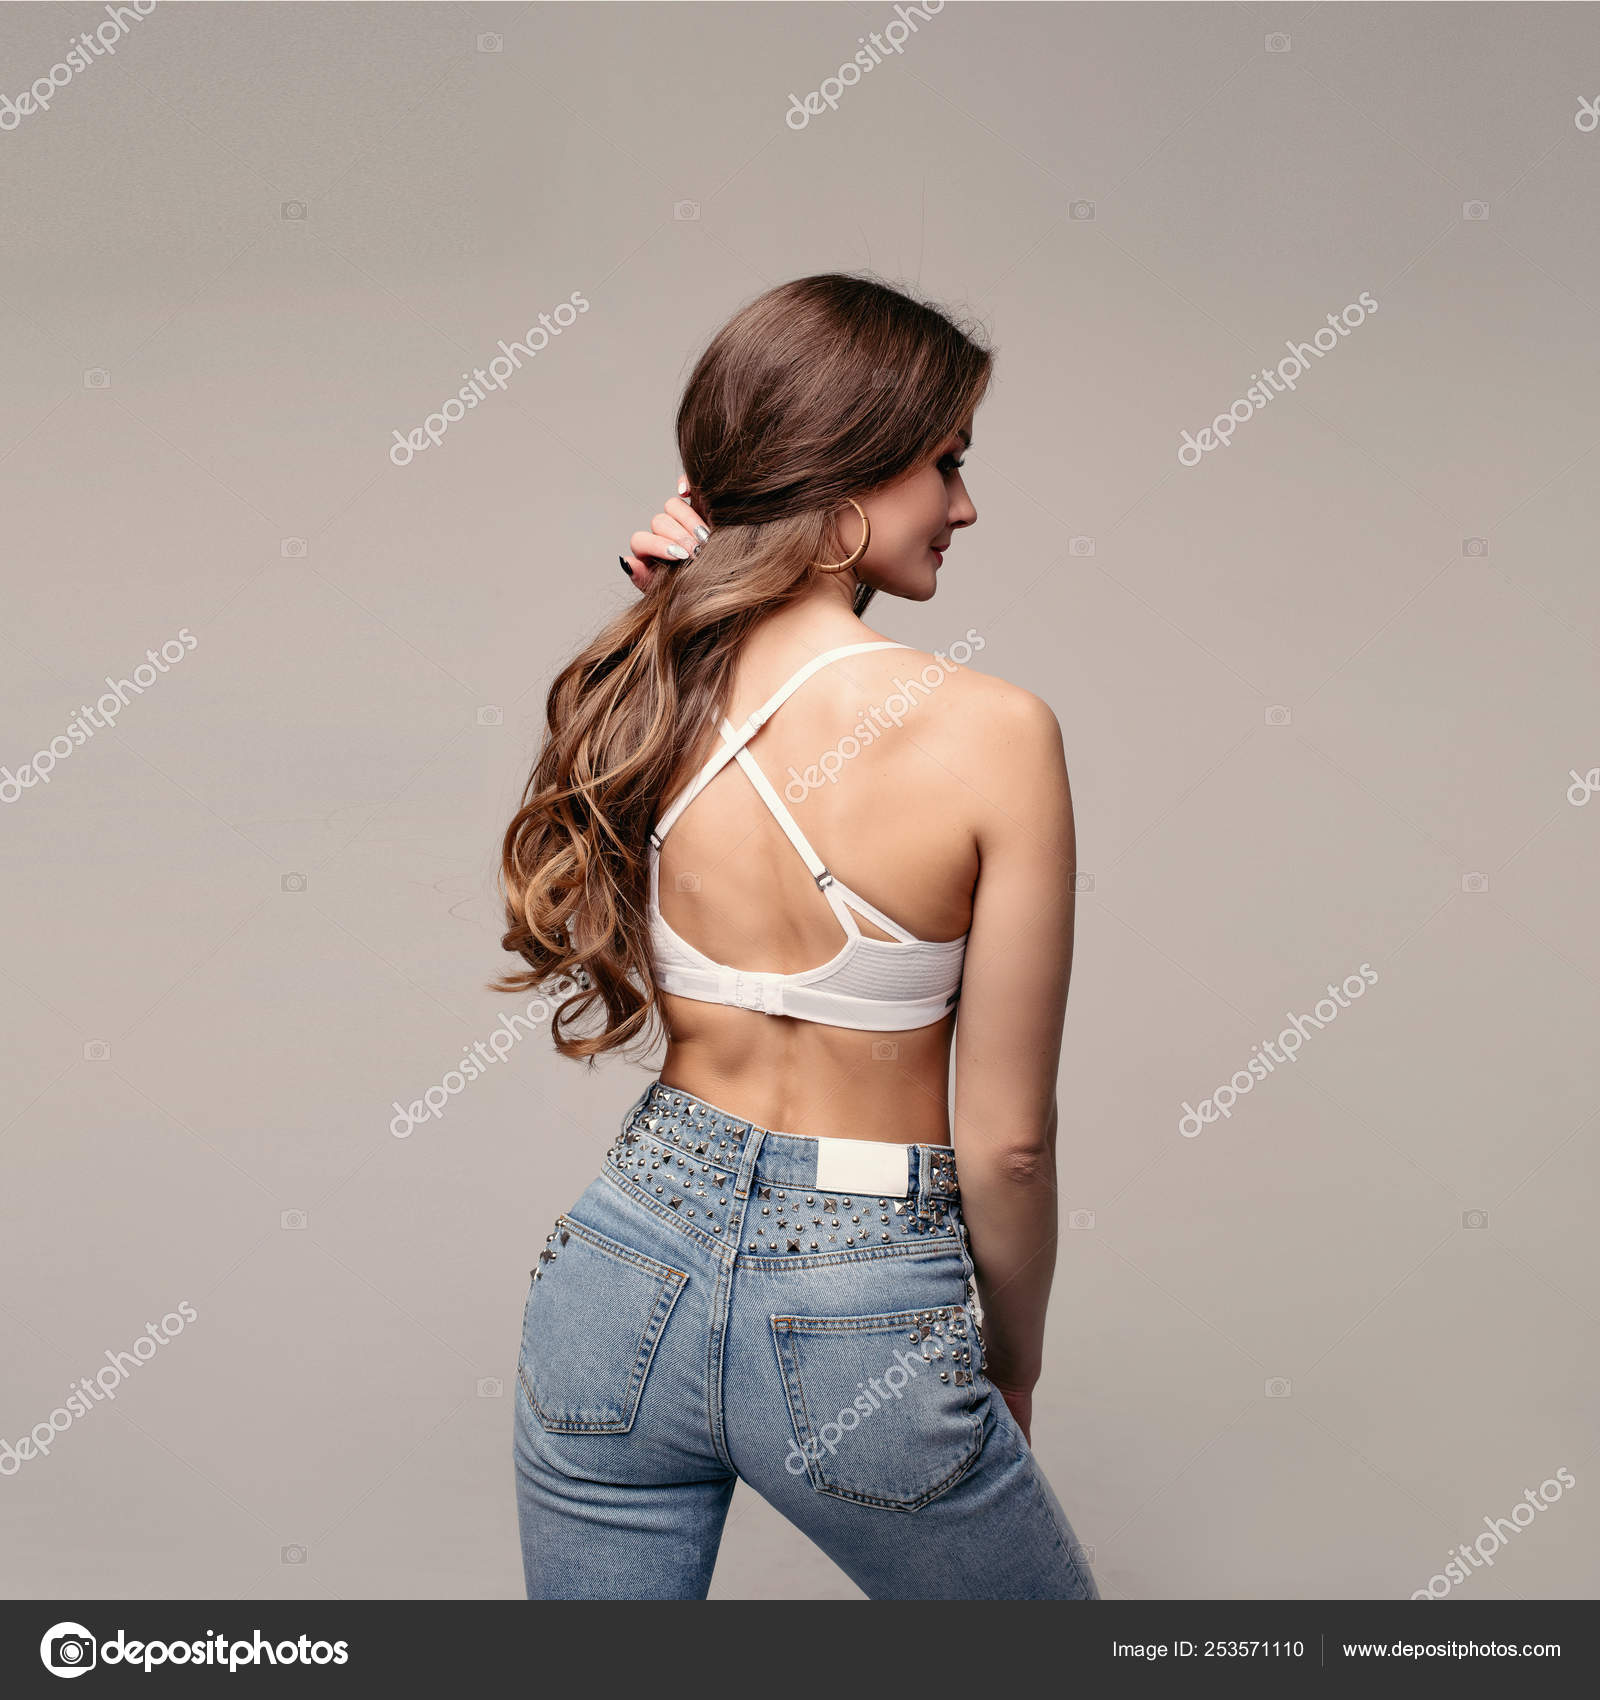 https://st4.depositphotos.com/17815278/25357/i/1600/depositphotos_253571110-stock-photo-brunette-slim-model-in-jeans.jpg